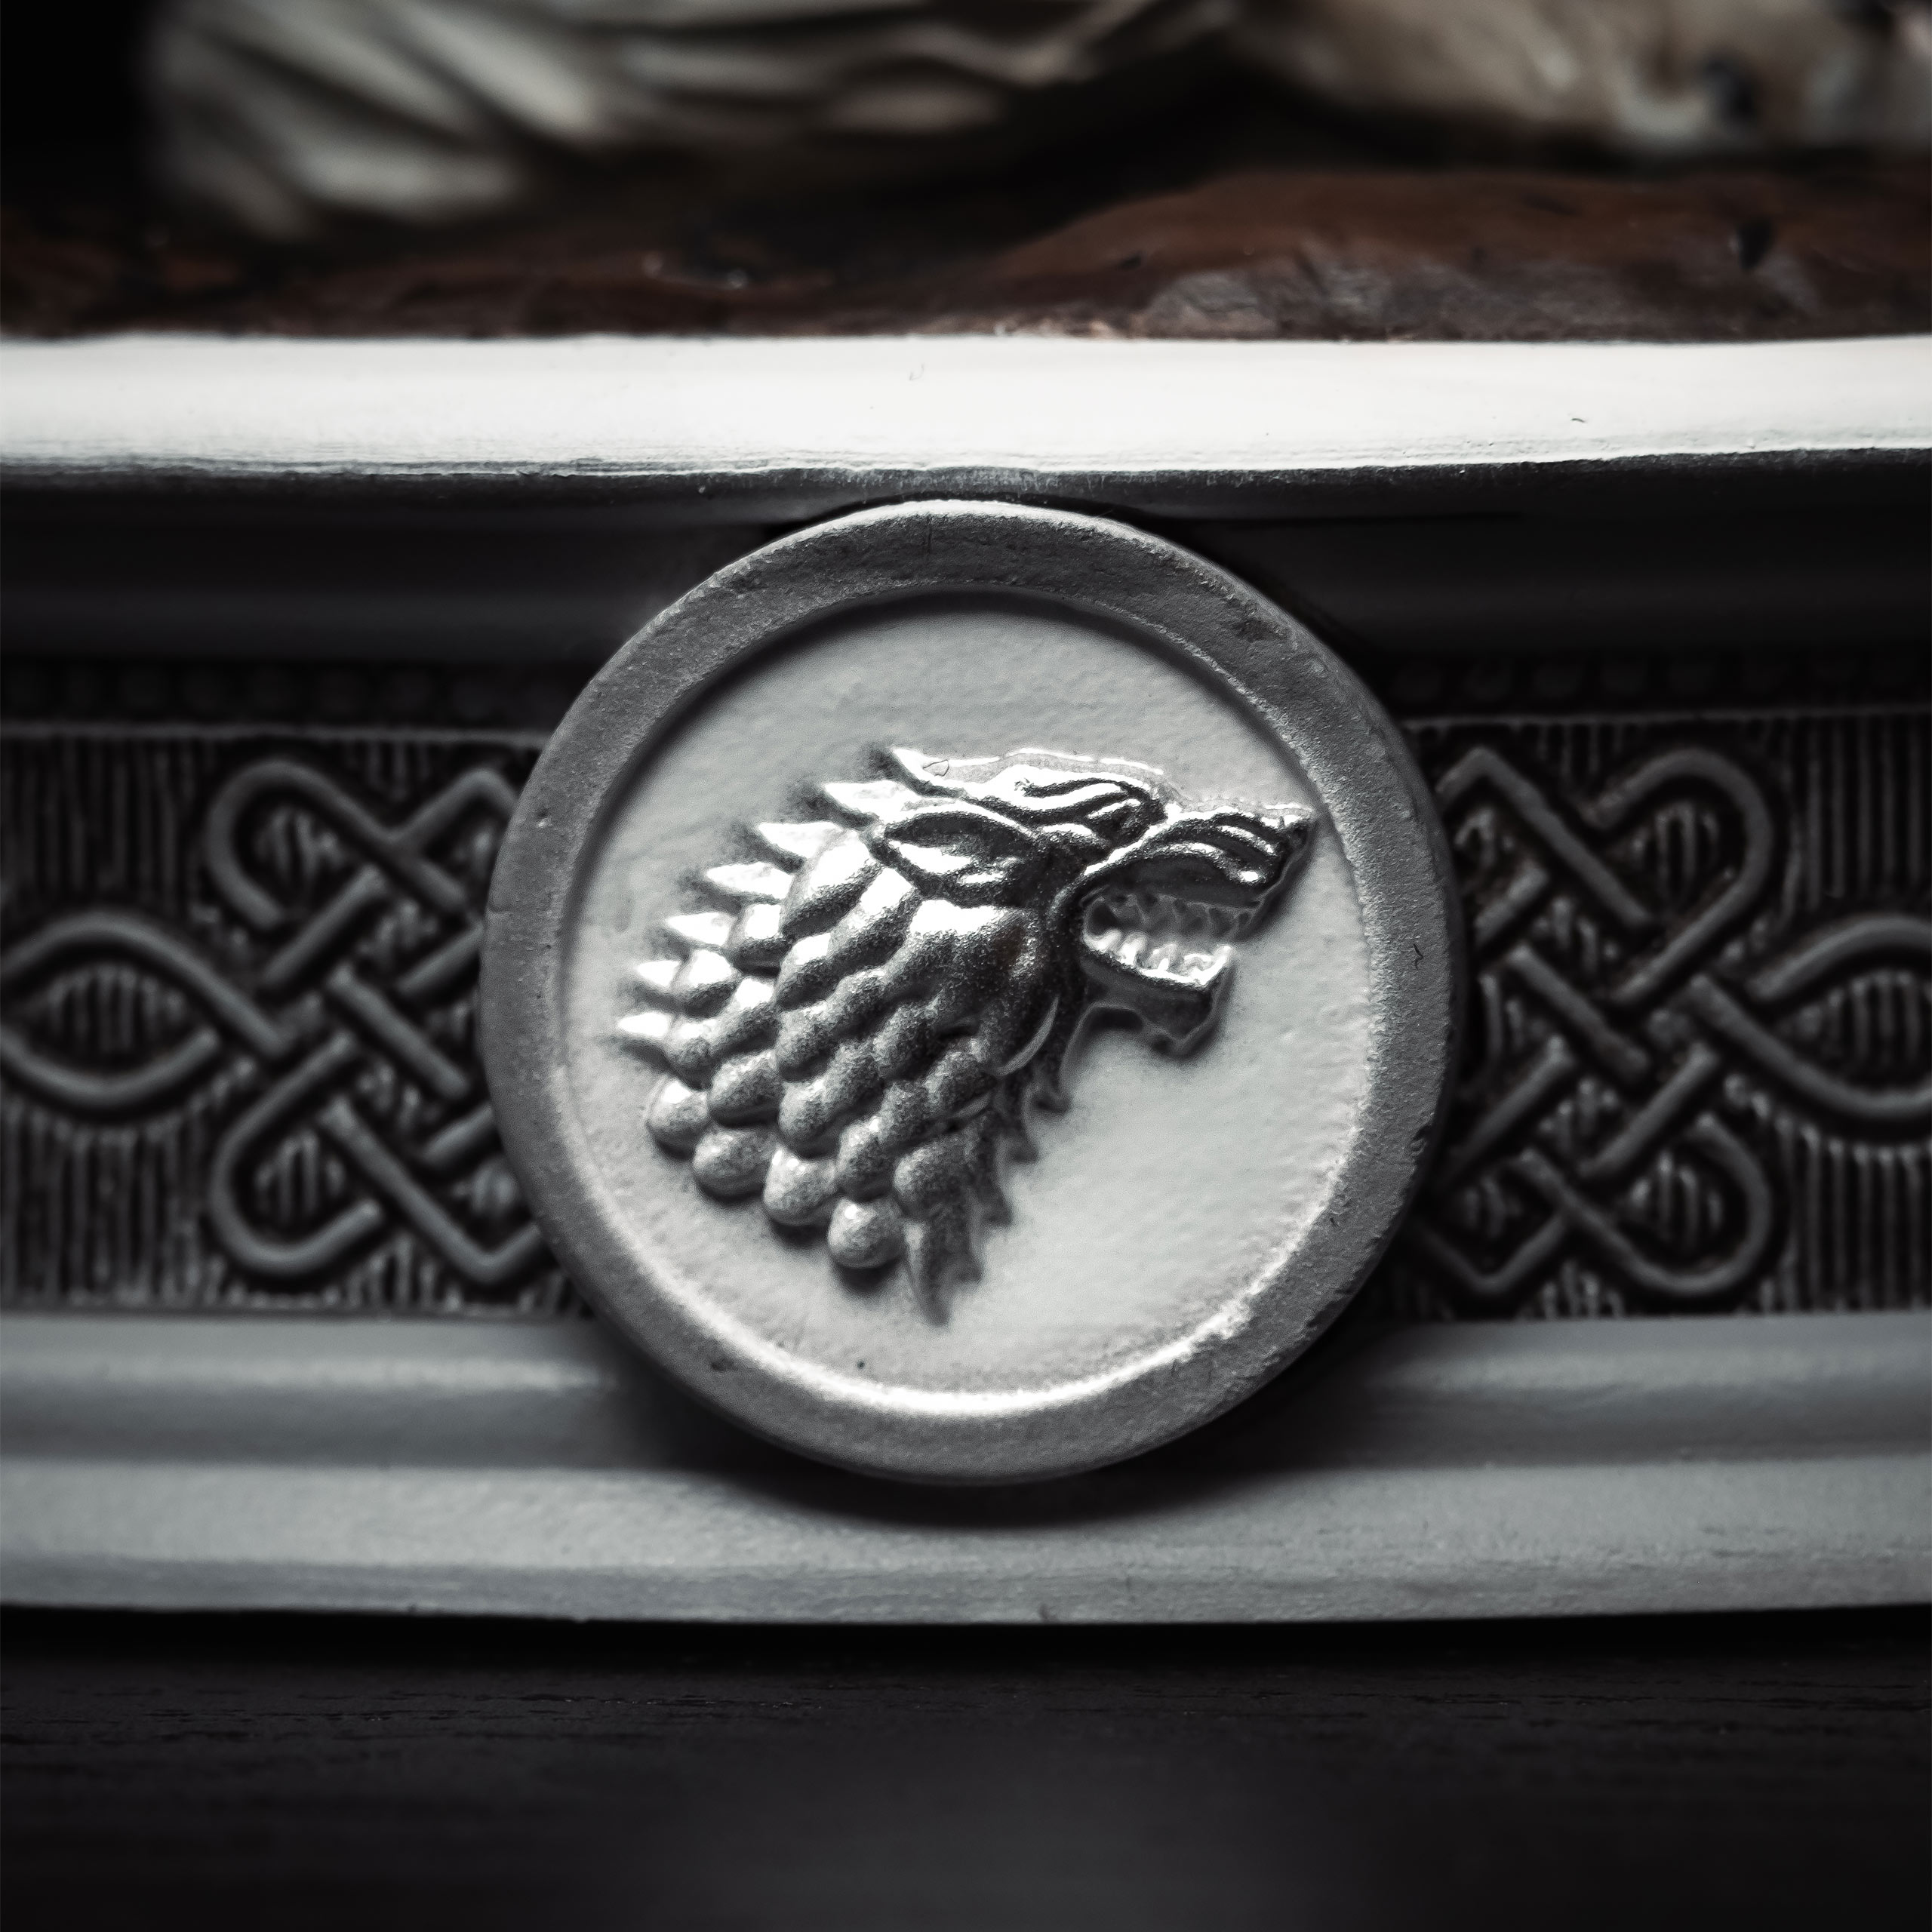 Game of Thrones - Jon Snow mit Schattenwolf Diorama